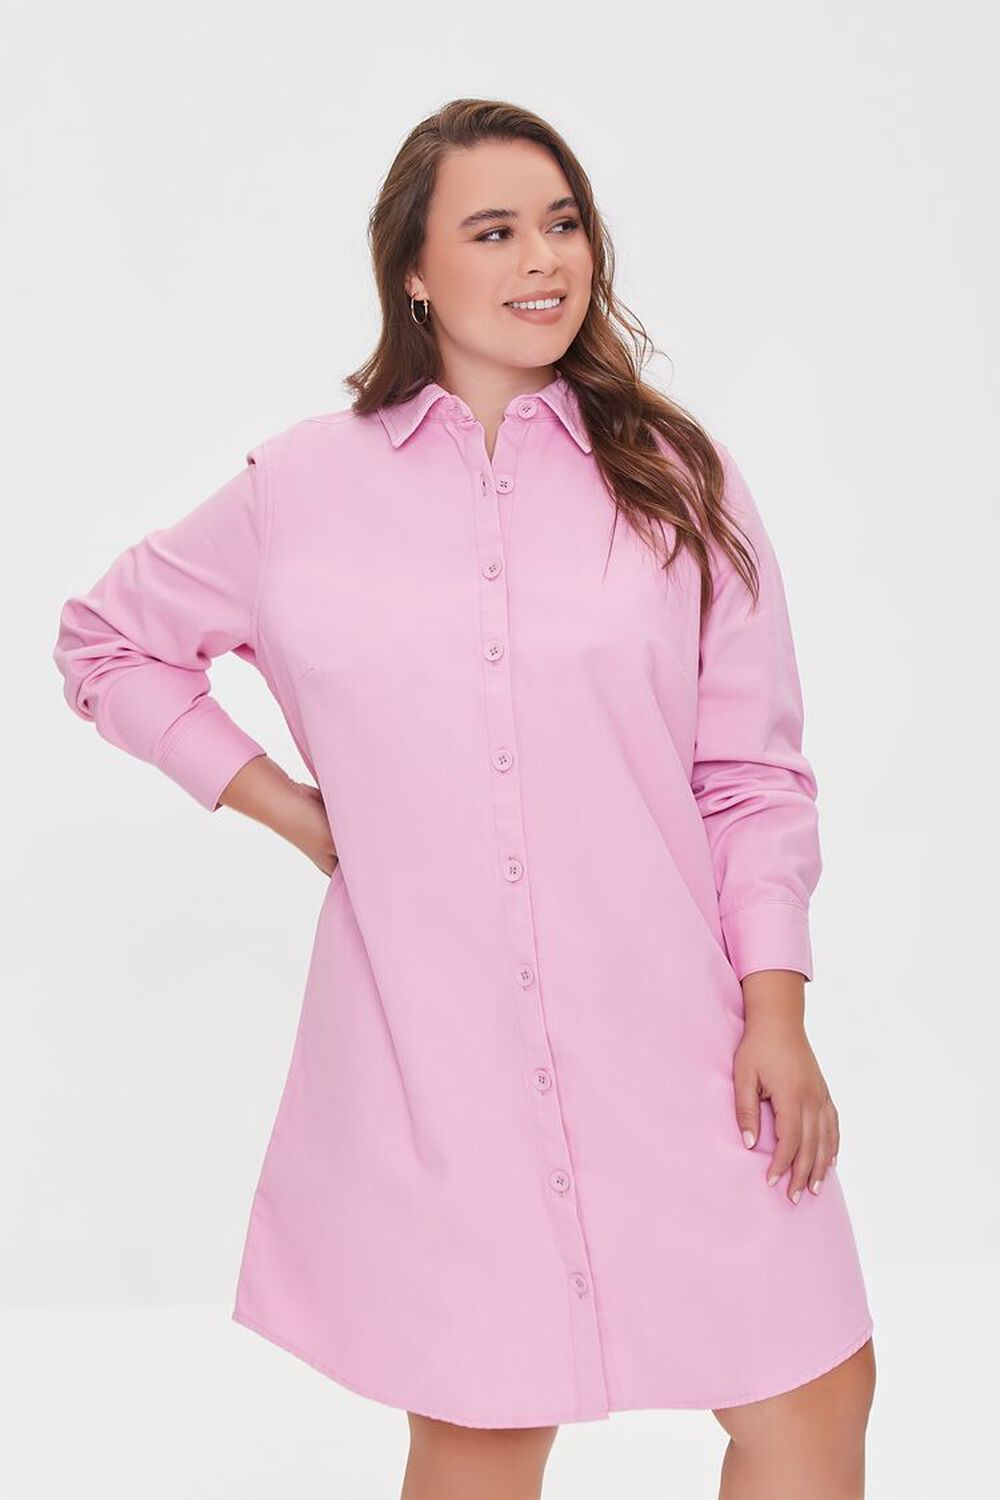 PINK Plus Size Twill Shirt Dress, image 1